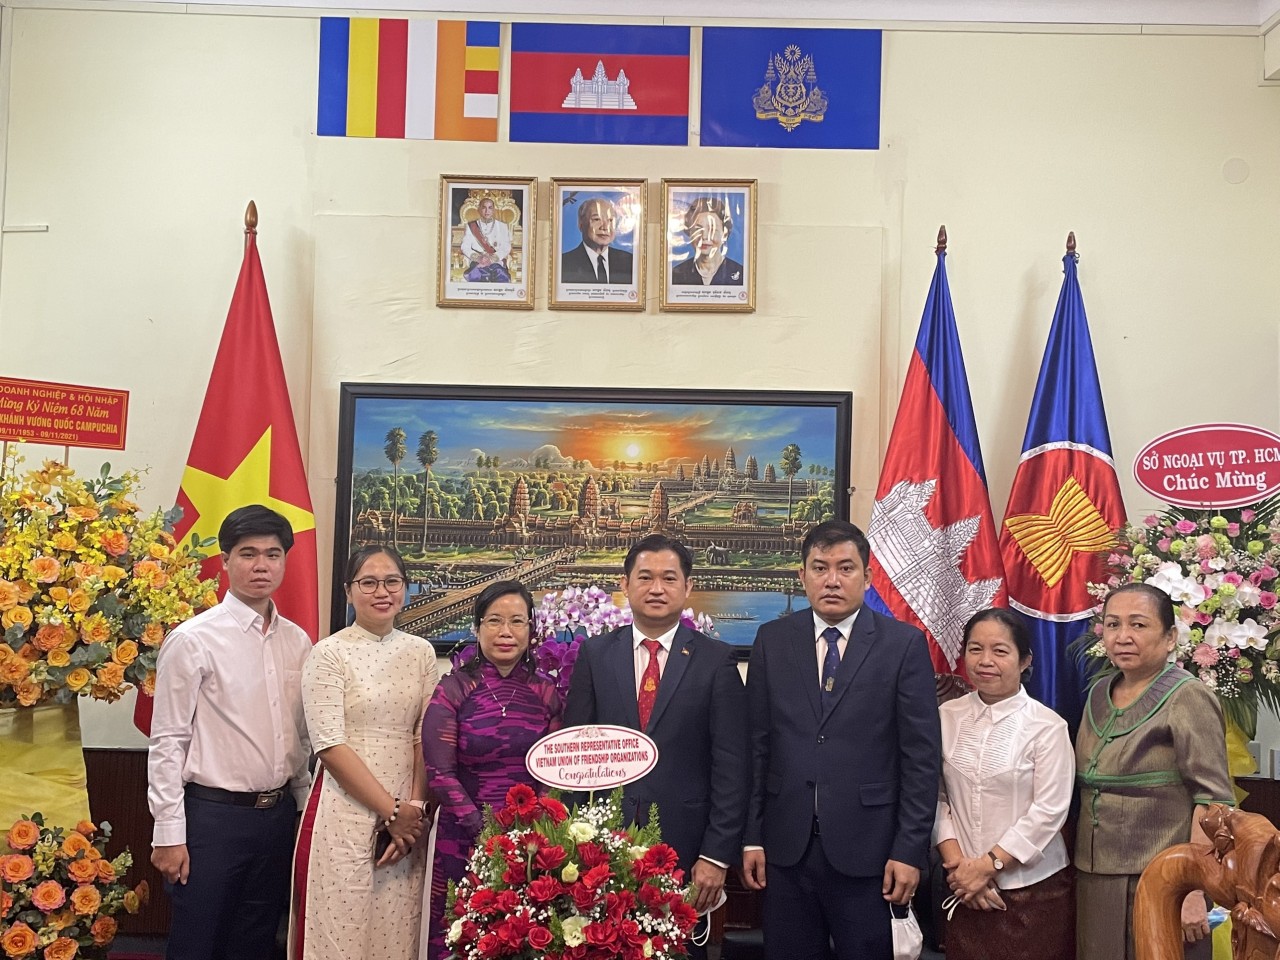 Bà Trần Thị Thu Thủy – Trưởng đại diện, Văn phòng đại diện phía Nam (VUFO) chúc mừng cán bộ, nhân viên Tổng lãnh sự quán Campuchia tại TPHCM